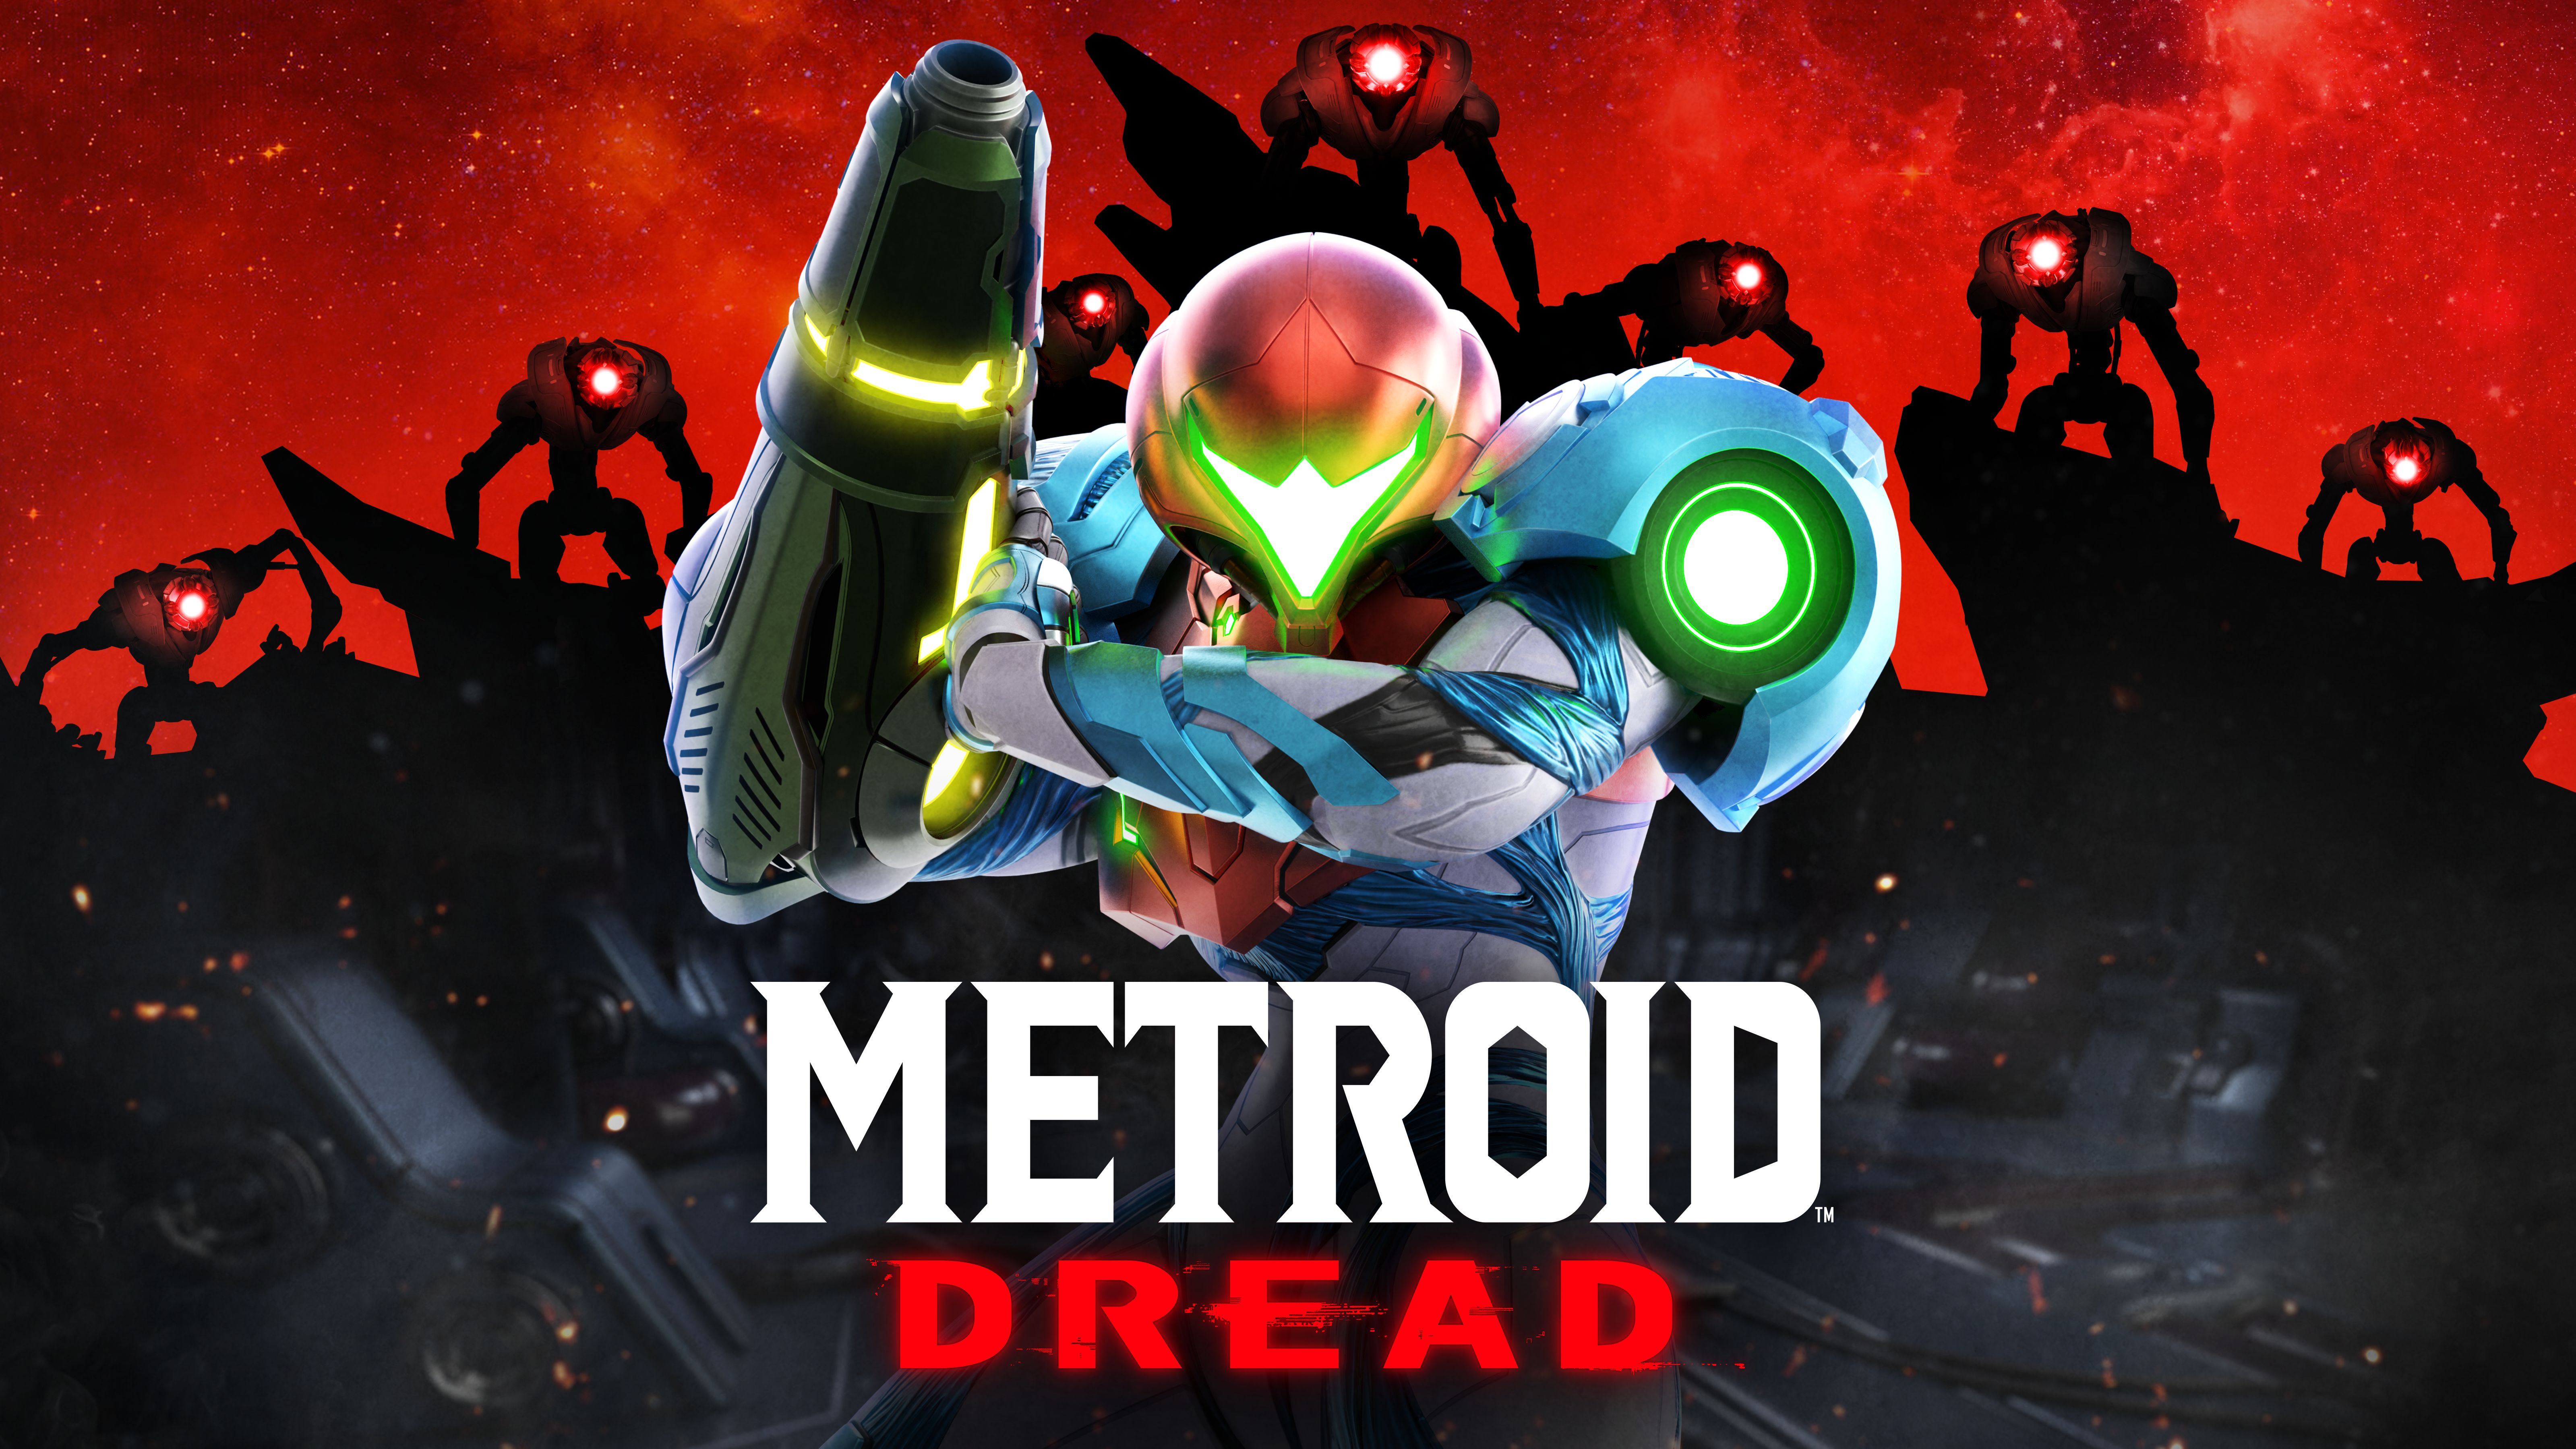 Descargar fondos de escritorio de Metroid Dread HD